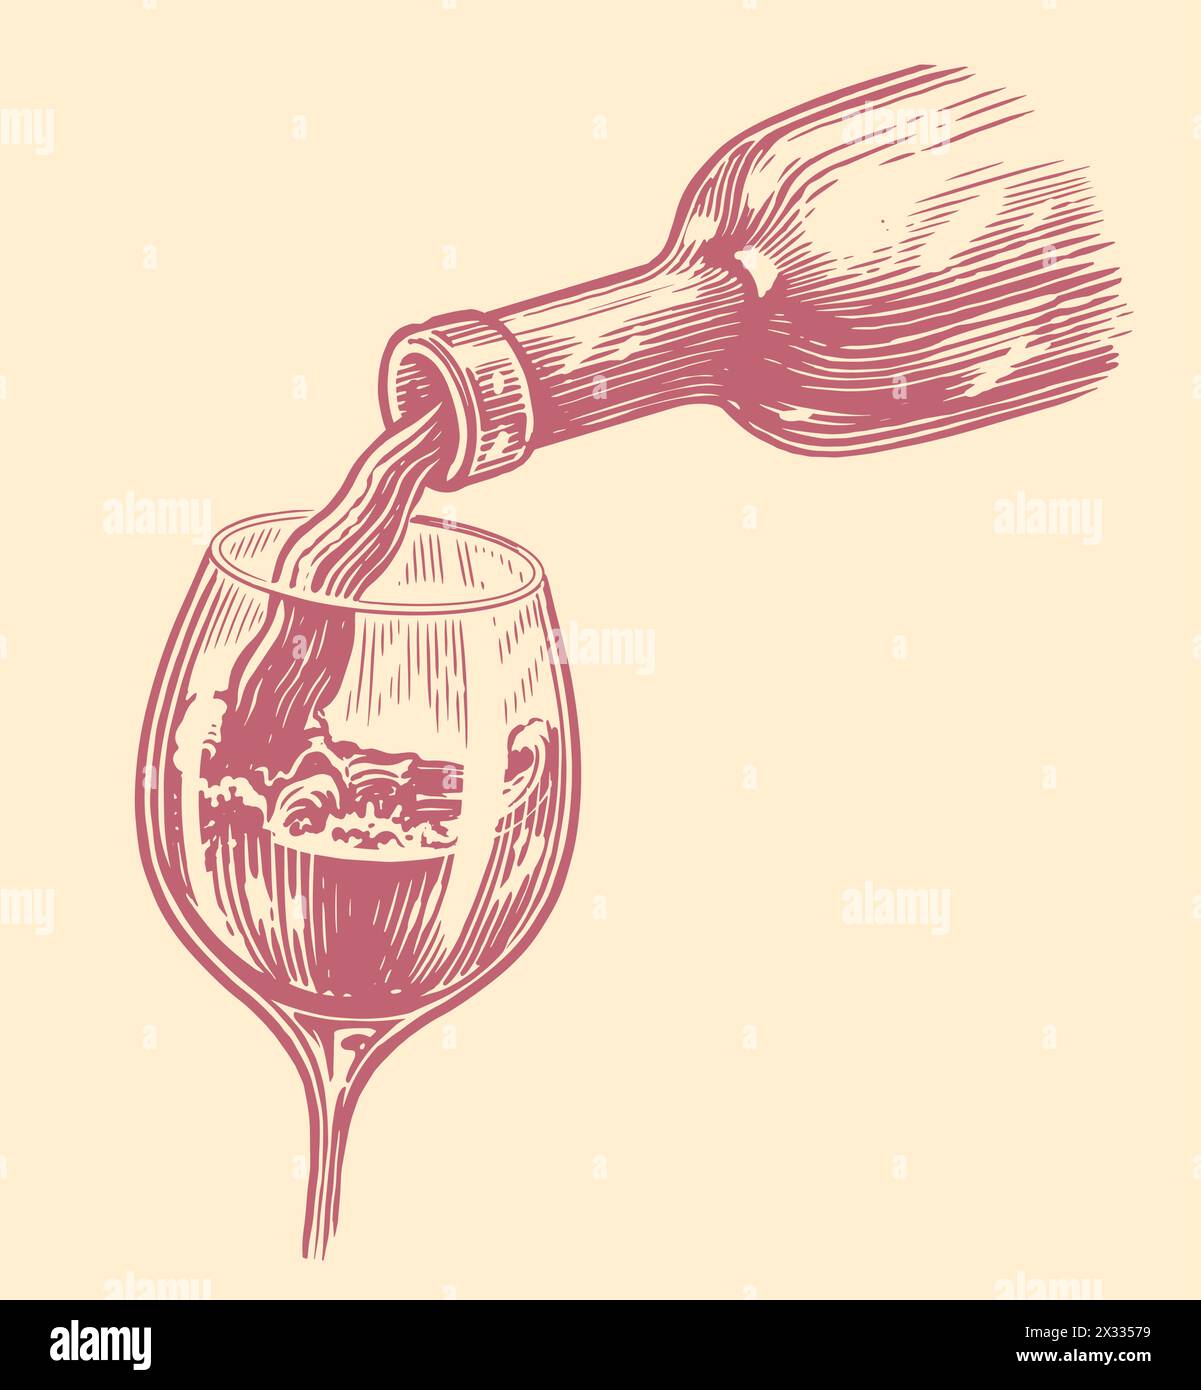 Versare la bevanda di vino dalla bottiglia al bicchiere. Schizzo del concetto di azienda vinicola. Illustrazione vettoriale vintage Illustrazione Vettoriale